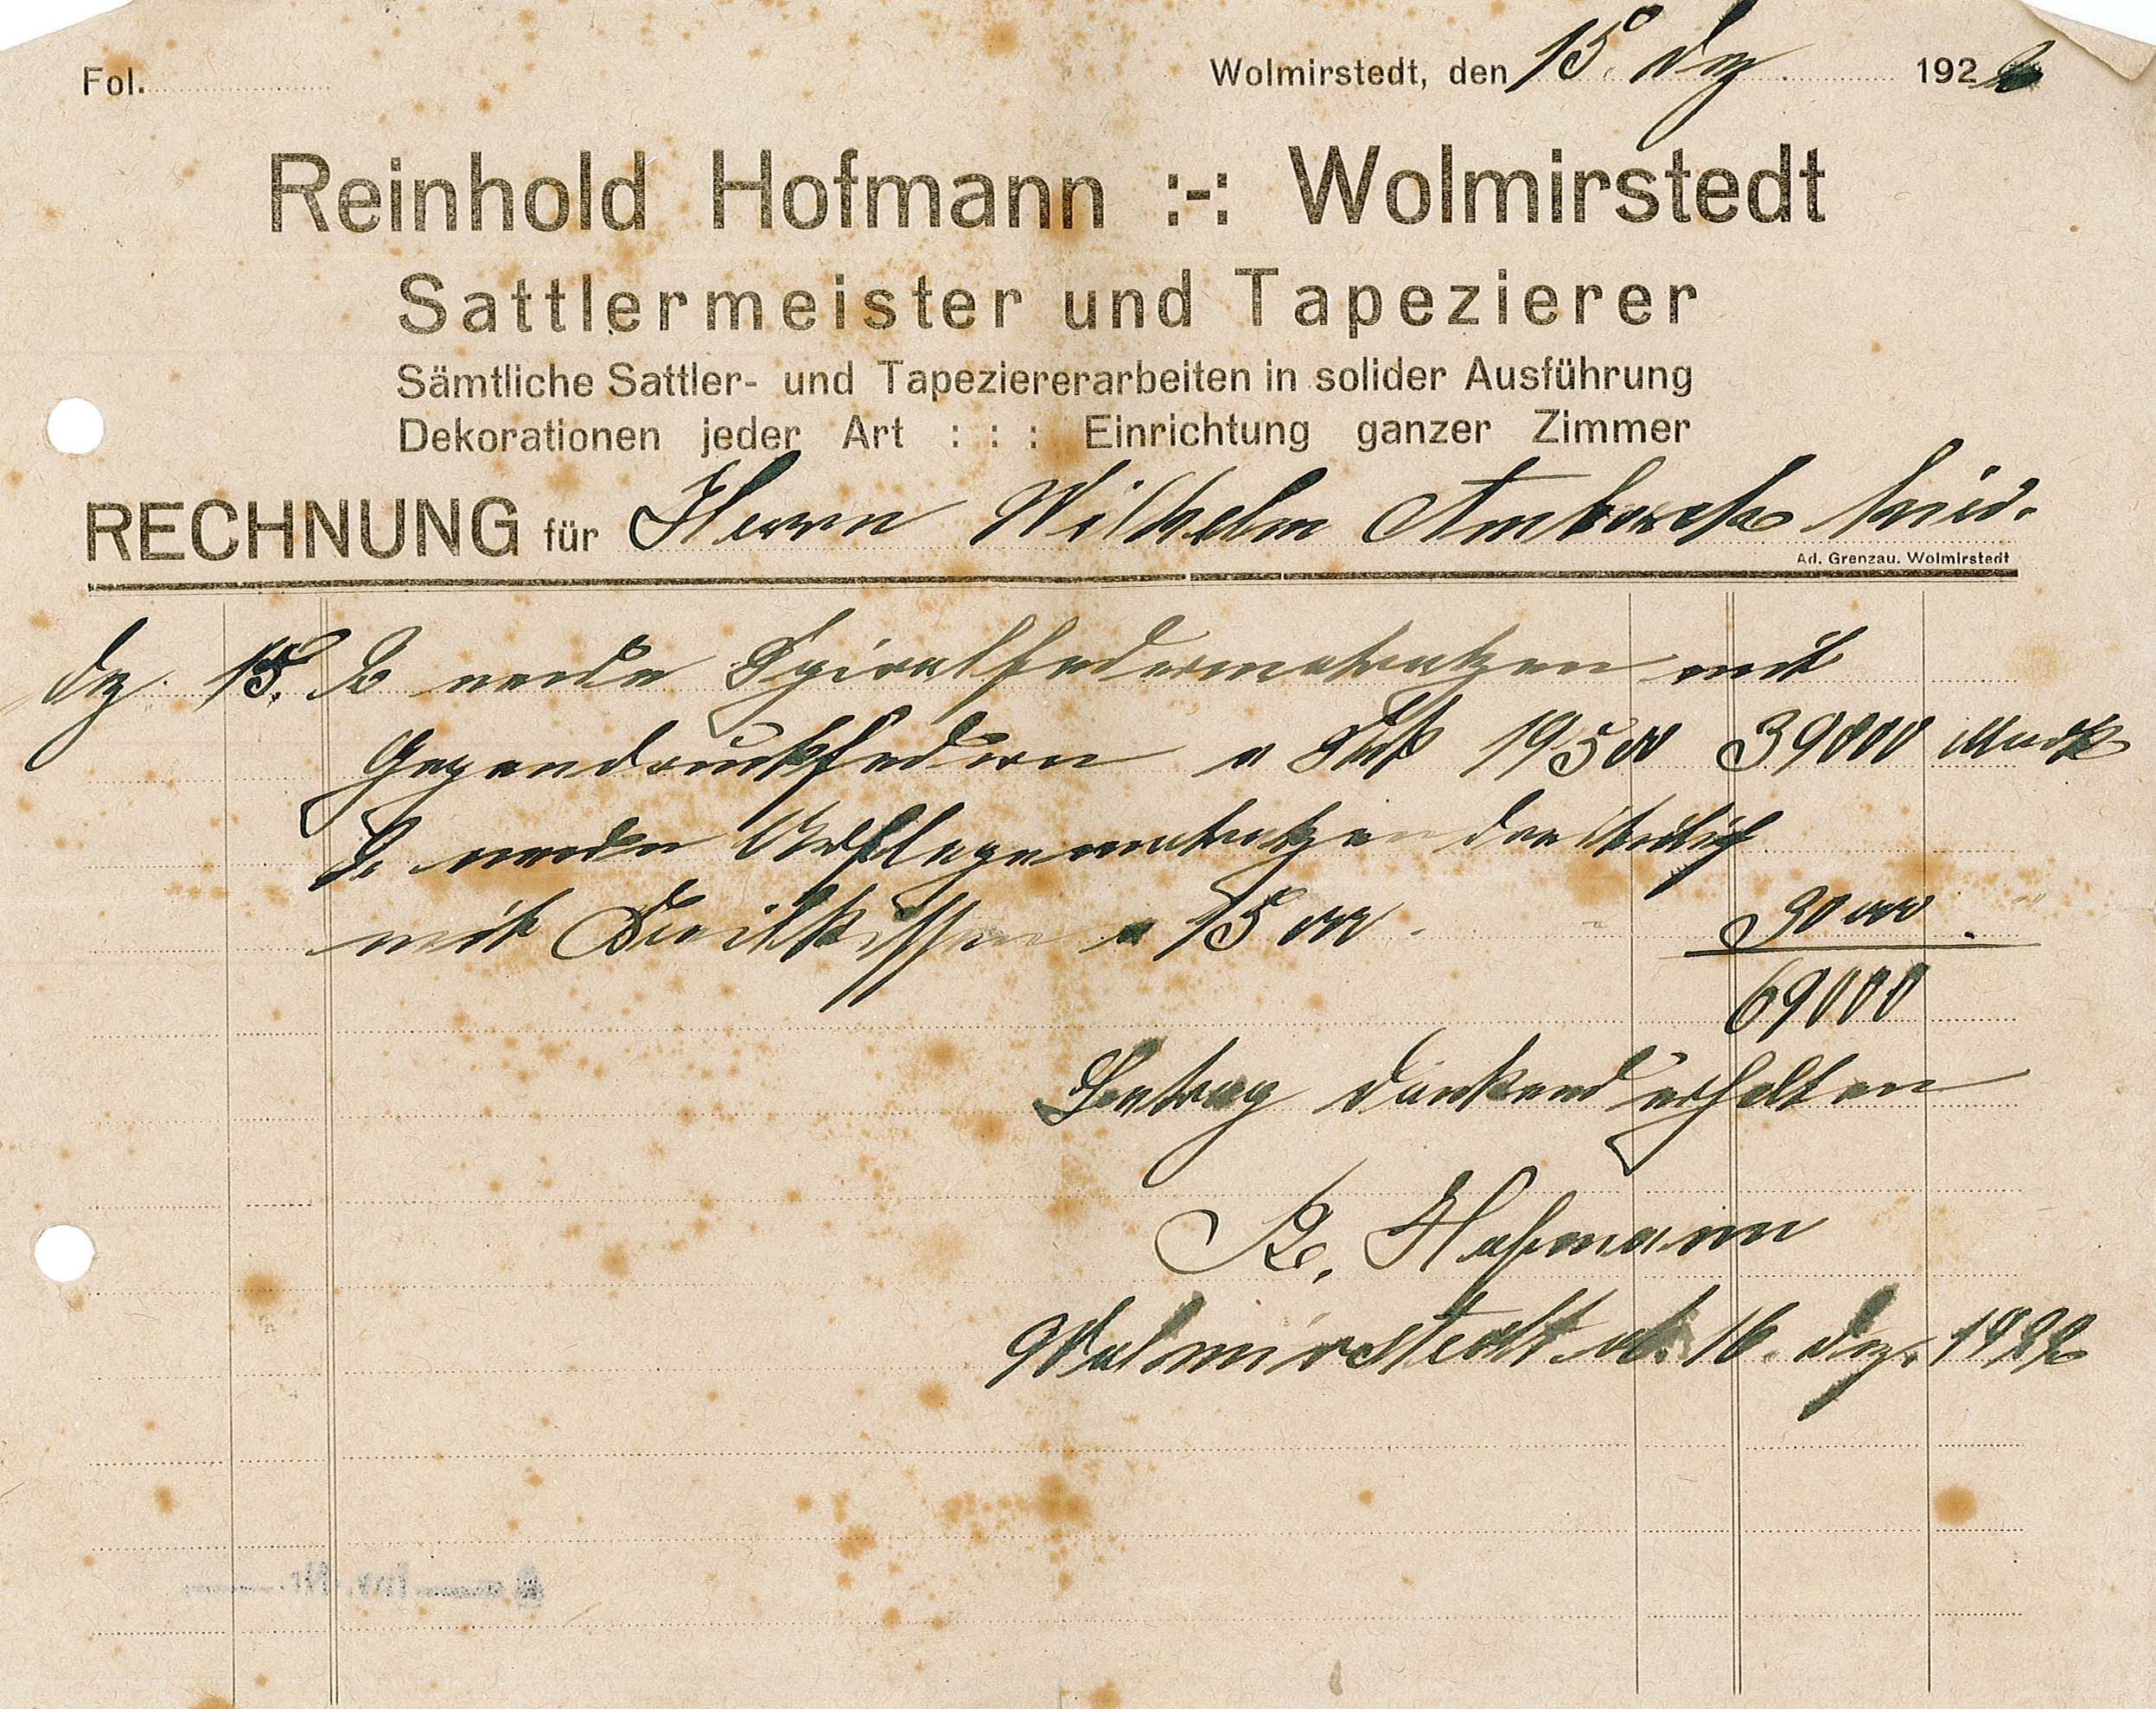 Rechnung des Sattlermeisters Reinhold Hofmann an Wilhelm Ambach, 15./16. Dezember 1926 (Museum Wolmirstedt RR-F)